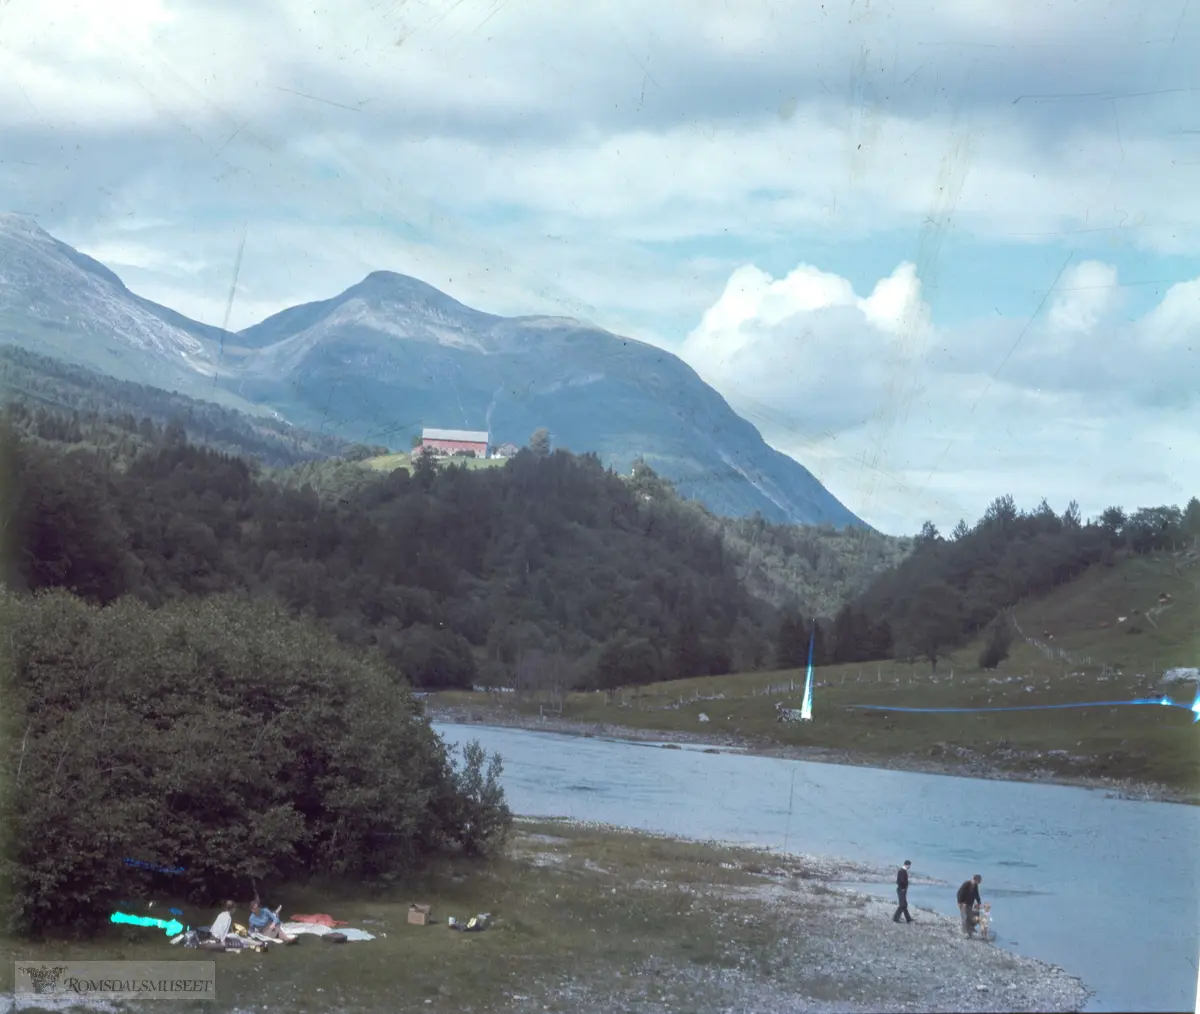 Frå Osen i Eikesdalsvatnet og Eira i Eresfjorden med Horne (Hånde) i bakgrunnen. Løa tilhører bnr. 1. Bilde er tatt frå Horne-sida. Andre sida av elva kallast «Atti bakkå» og er beitemark for Øveråsgardane. Det kom bru over Eira i Osen 1959-60.